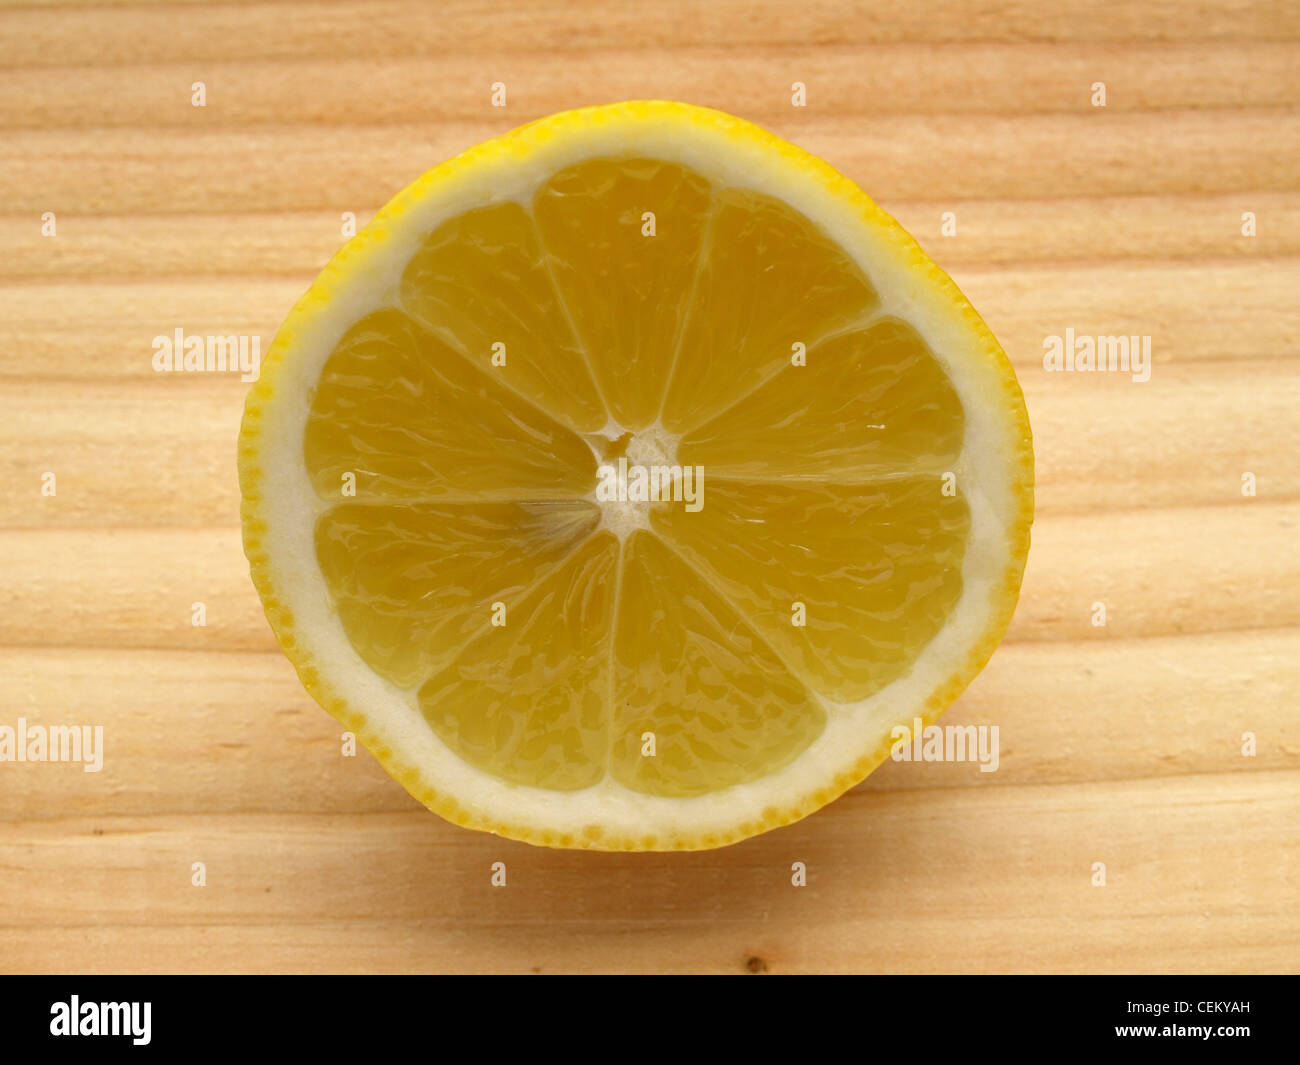 Un medio limón sobre madera / halbe Zitrone auf Holz Foto de stock